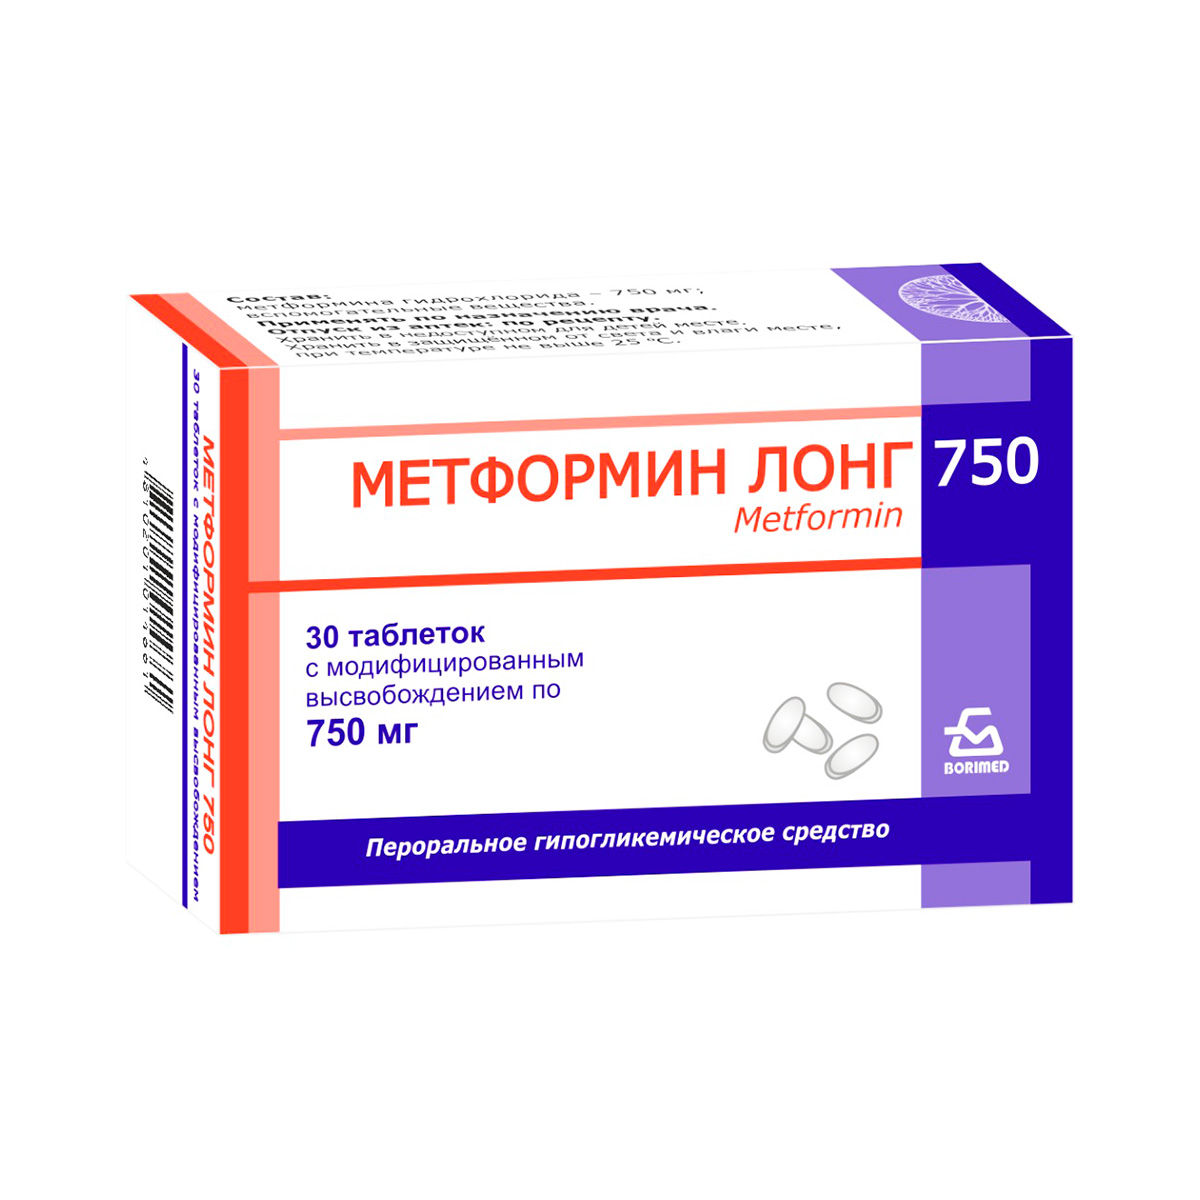 Метформин Лонг 750 мг таблетки с модифицированным высвобождением 30 шт